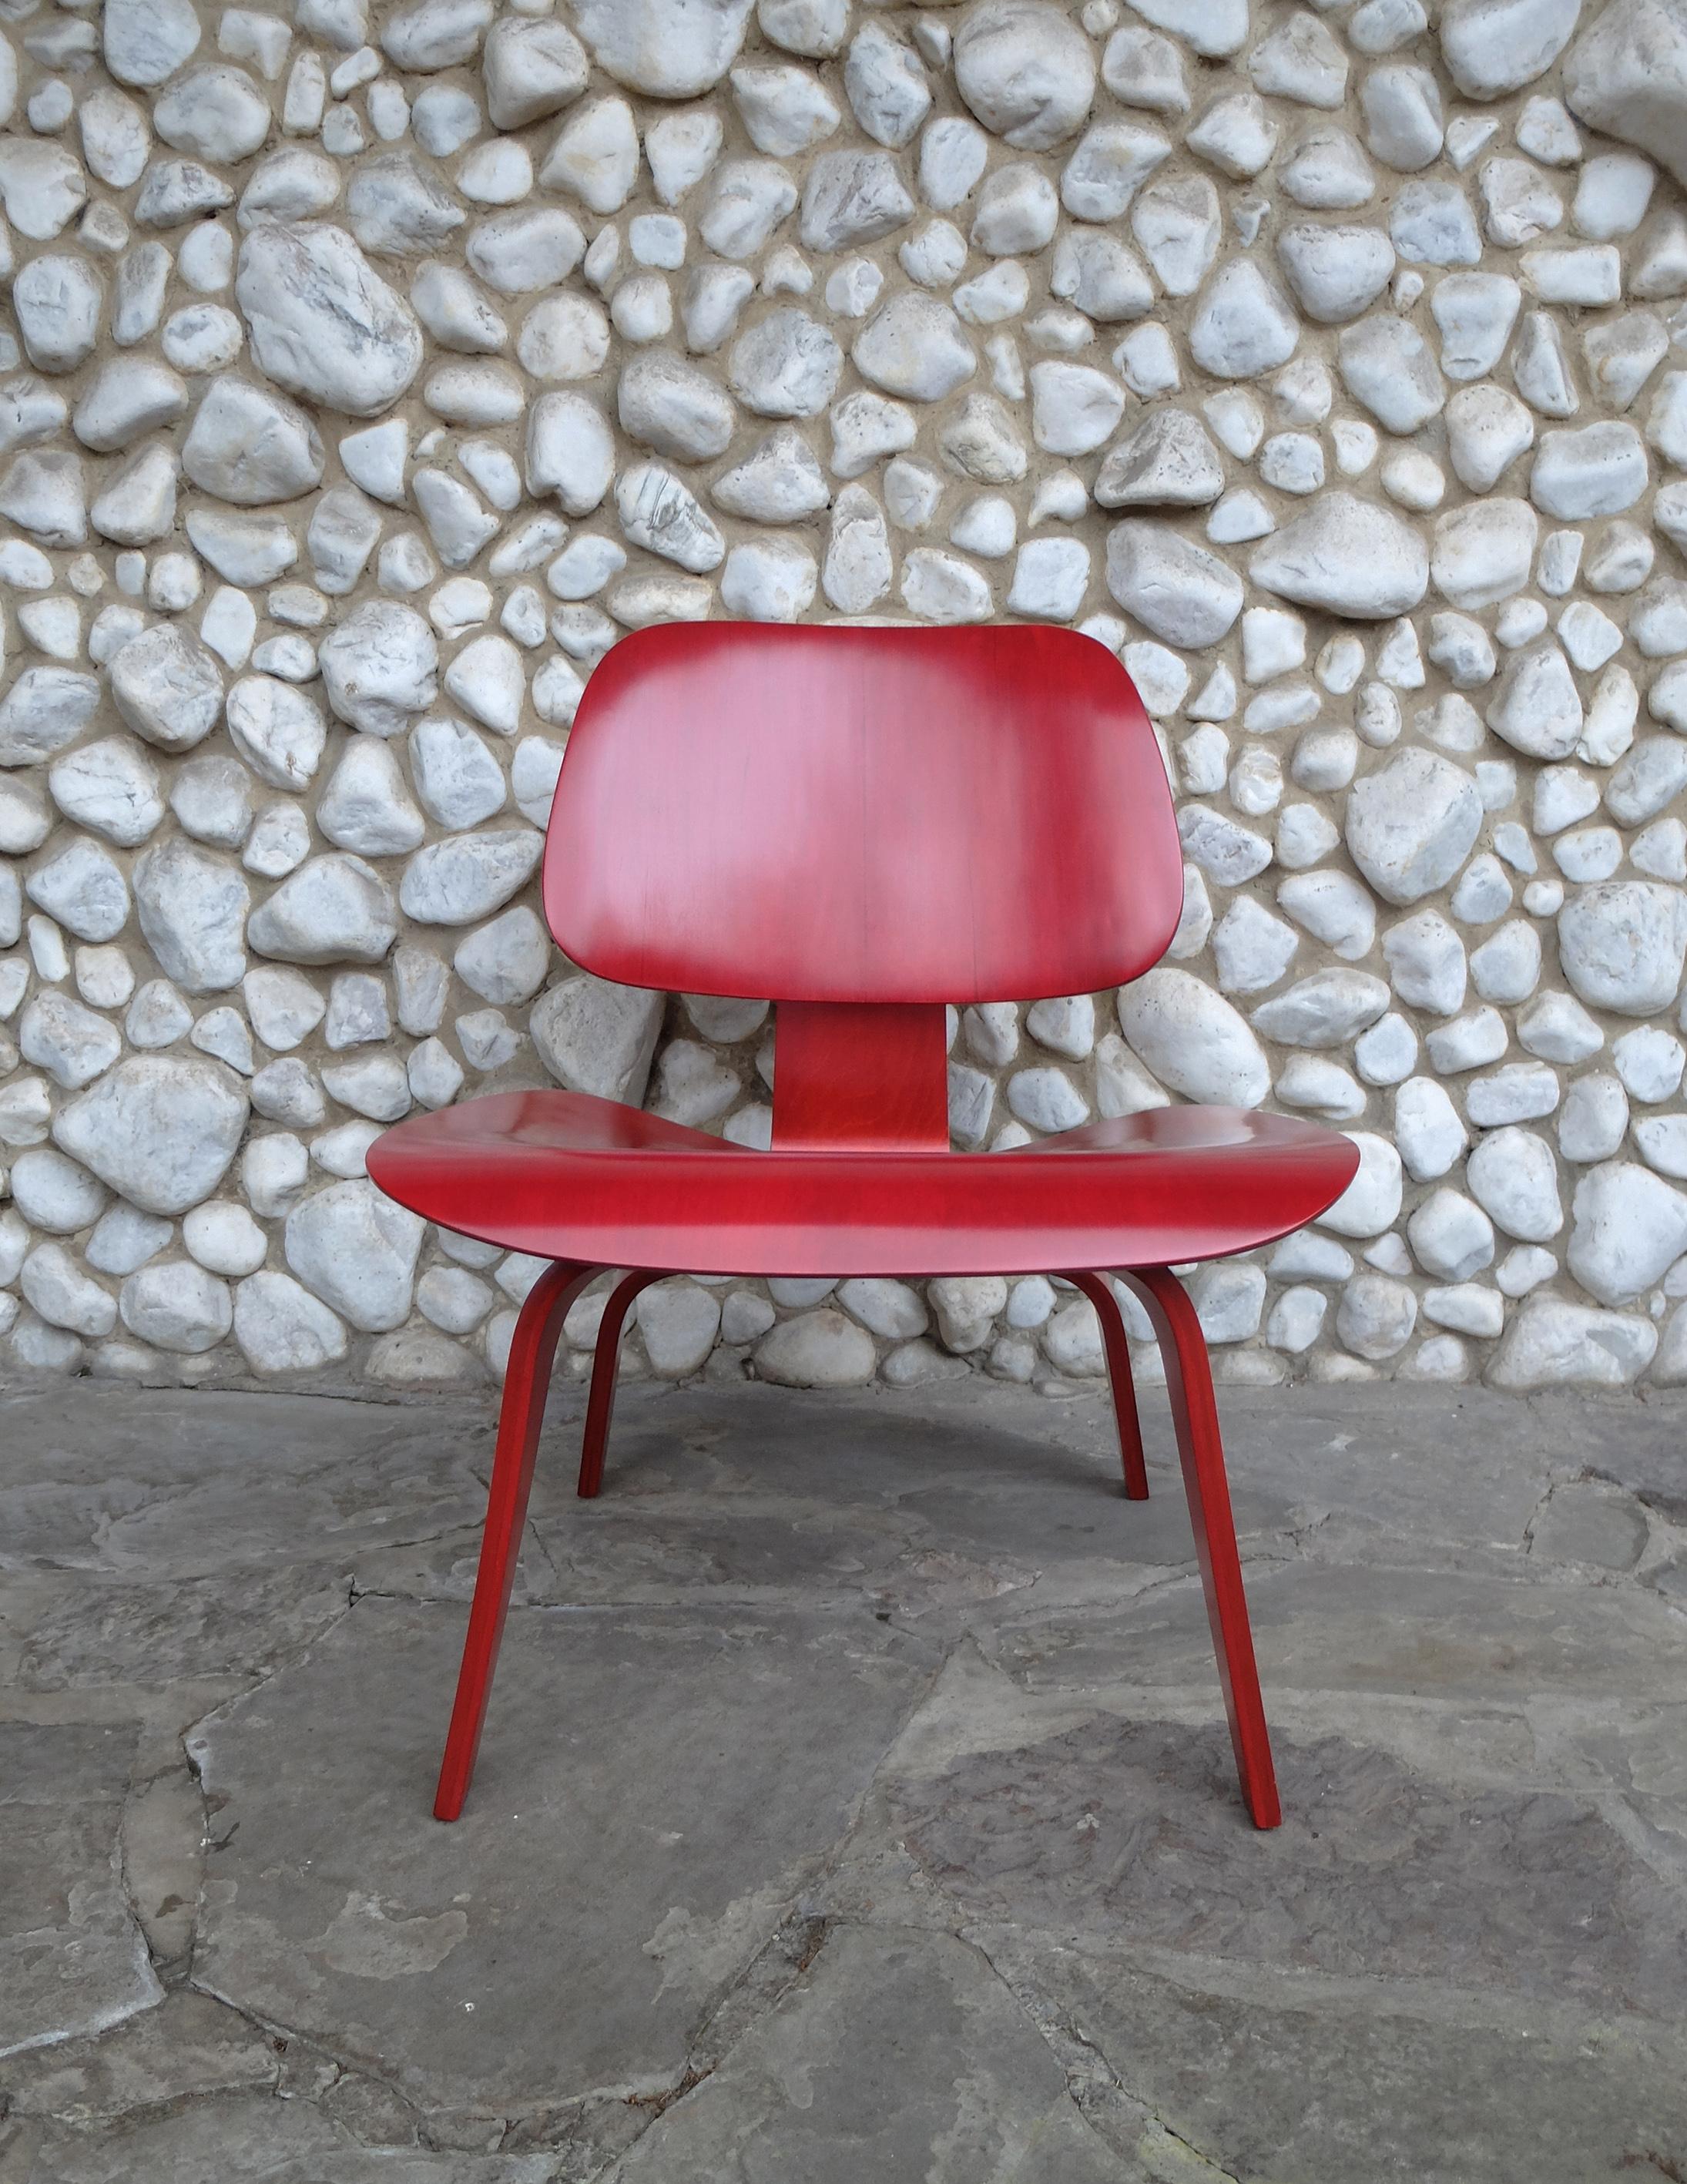 Chaise LCW (Lounge Chair Wood) créée par Charles et Ray Eames vers 1945.

Chaise vendue par Herman Miller, mais produite par Evans Plywood en 1948-1949. La disposition des vis 5-2-5 ci-dessous n'a été utilisée que par Evans Products. Lorsque Herman